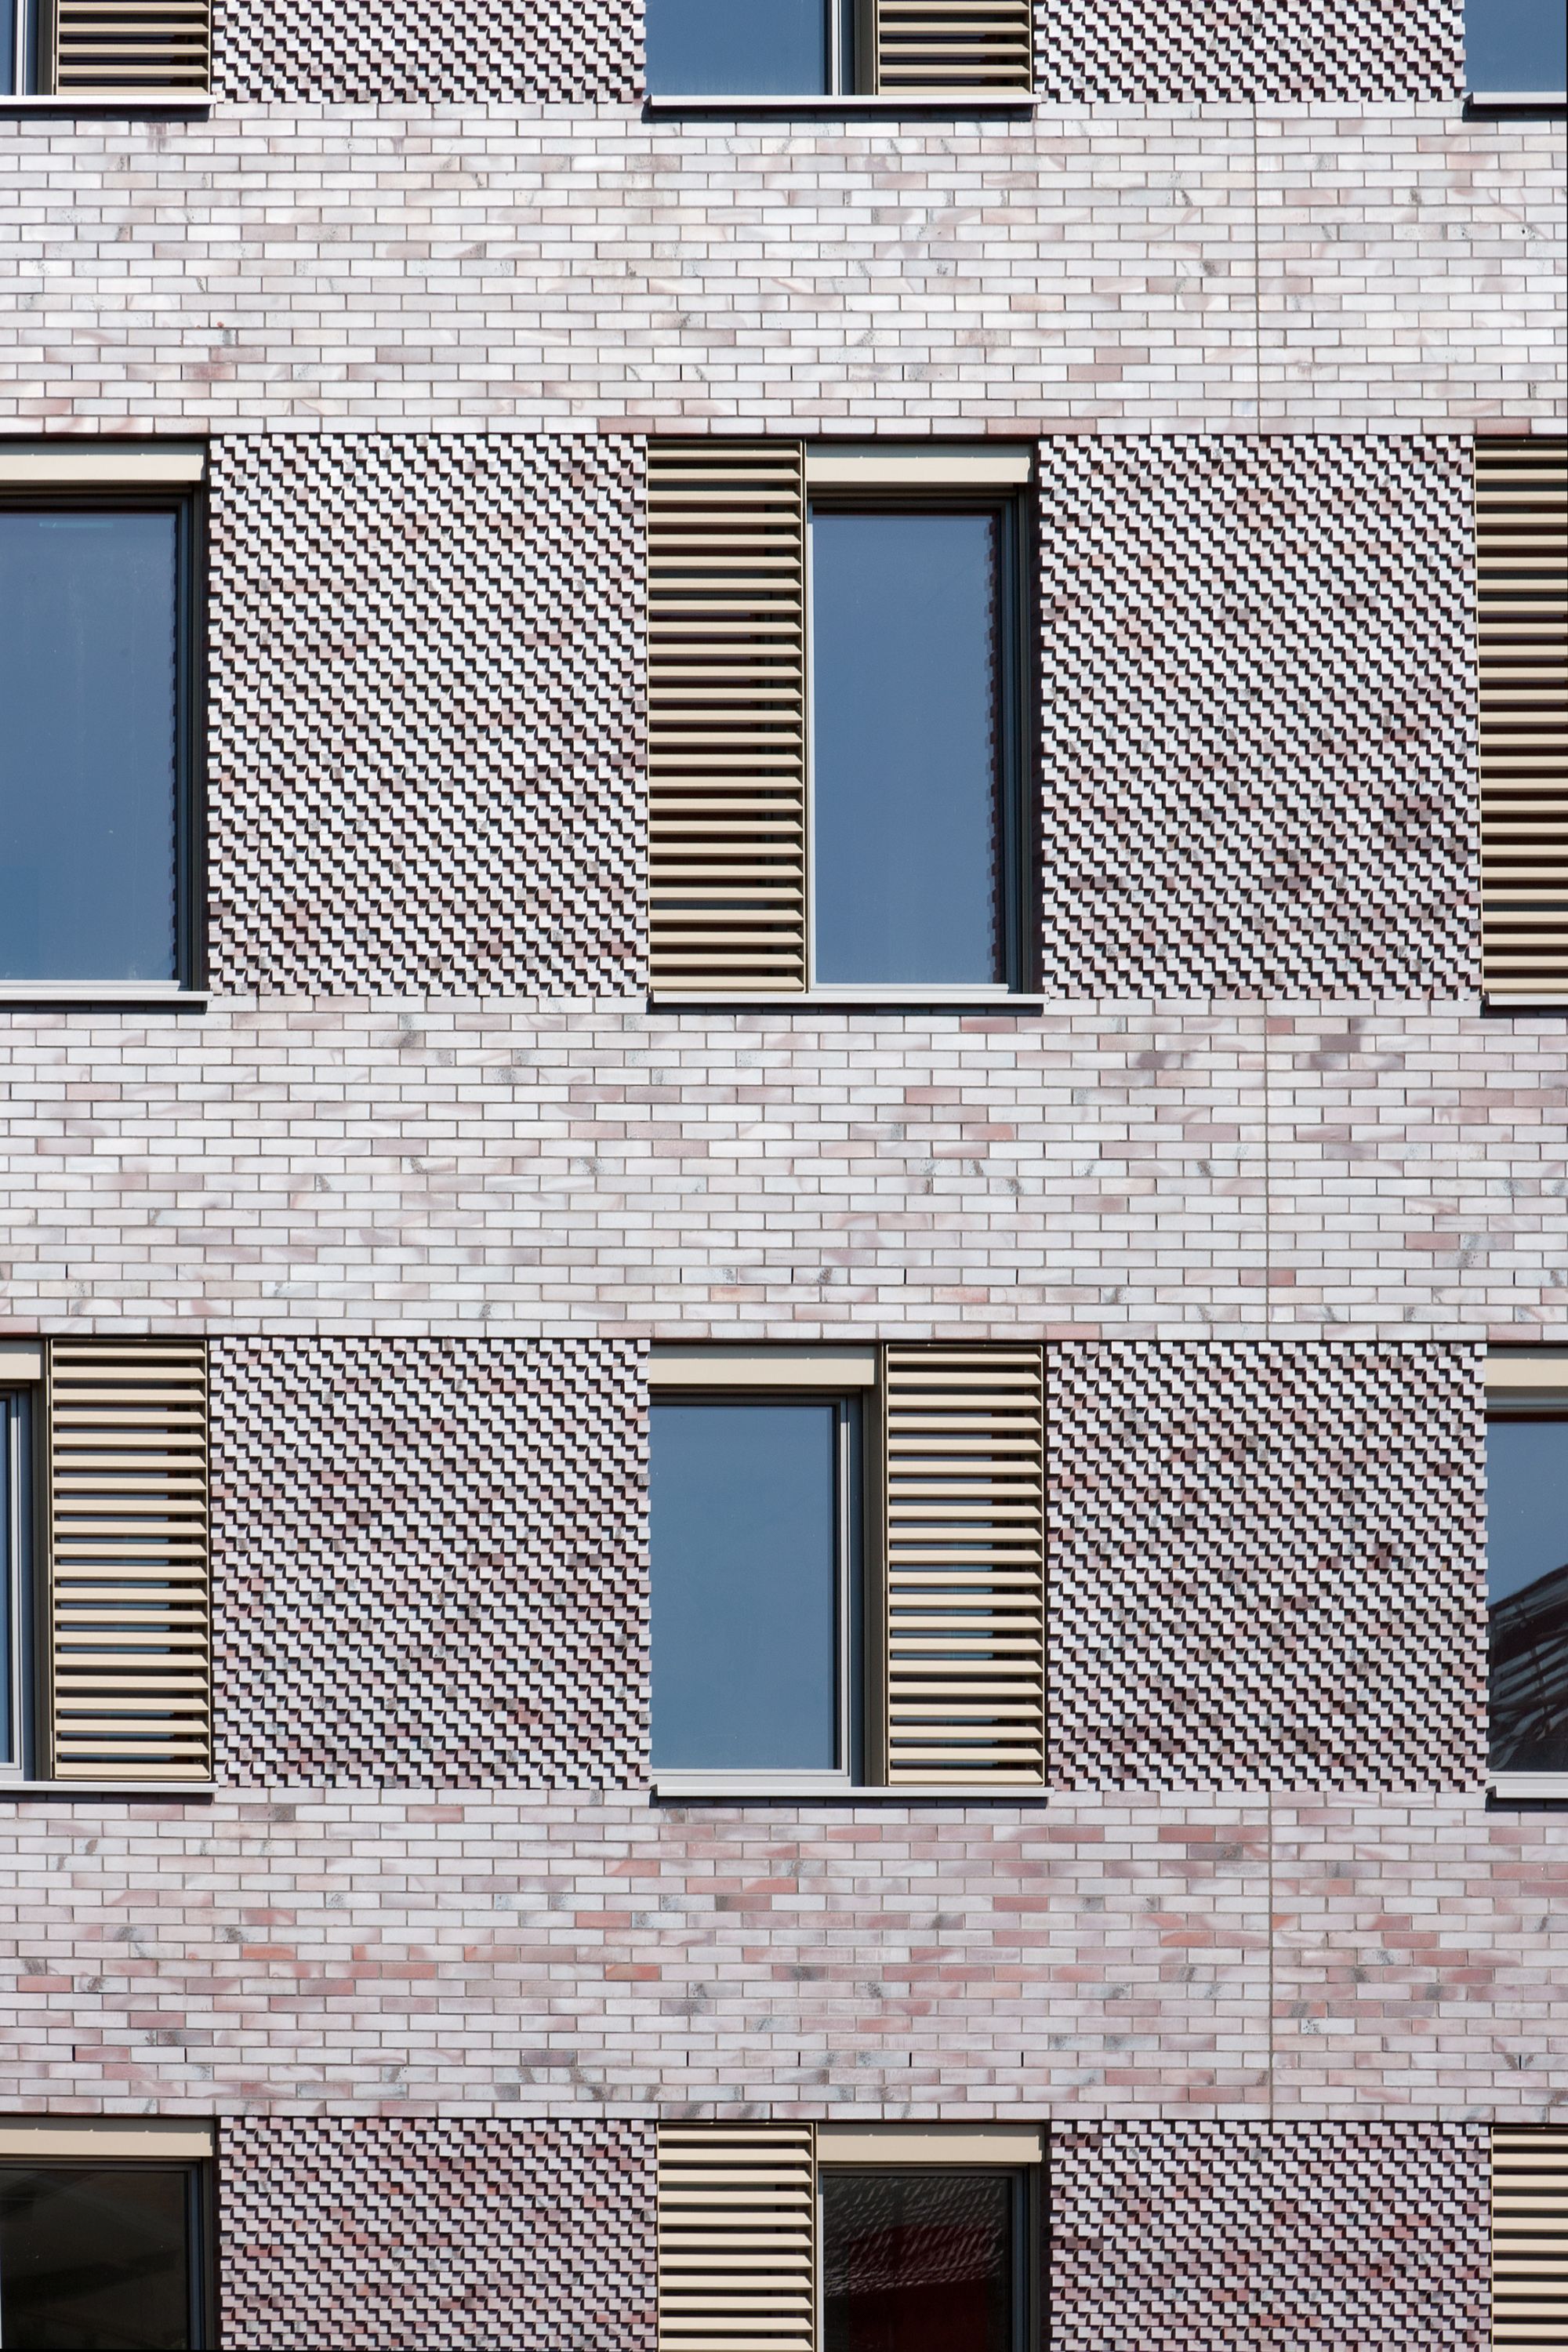 modern brick facade - Google Search | brick in architecture ...